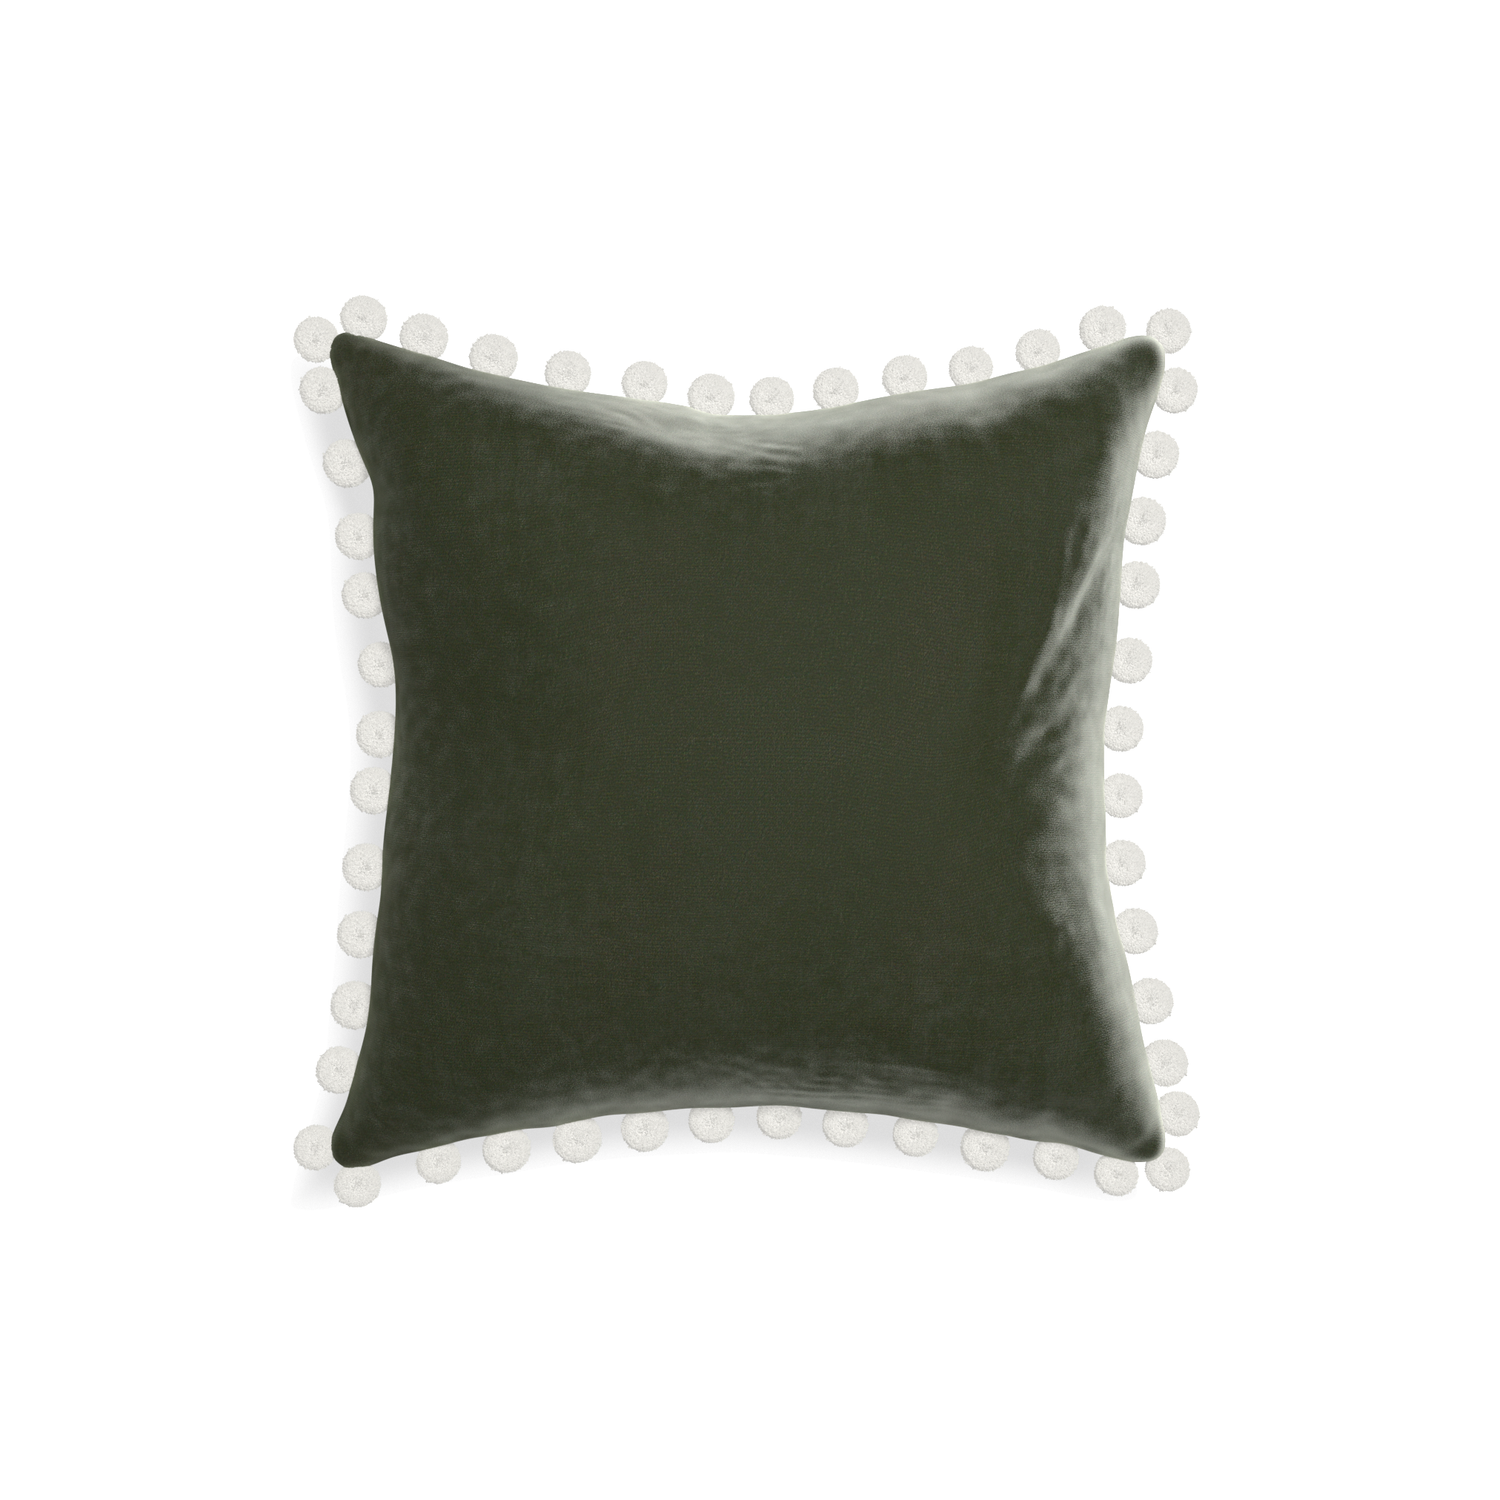 18-square fern velvet custom pillow with snow pom pom on white background